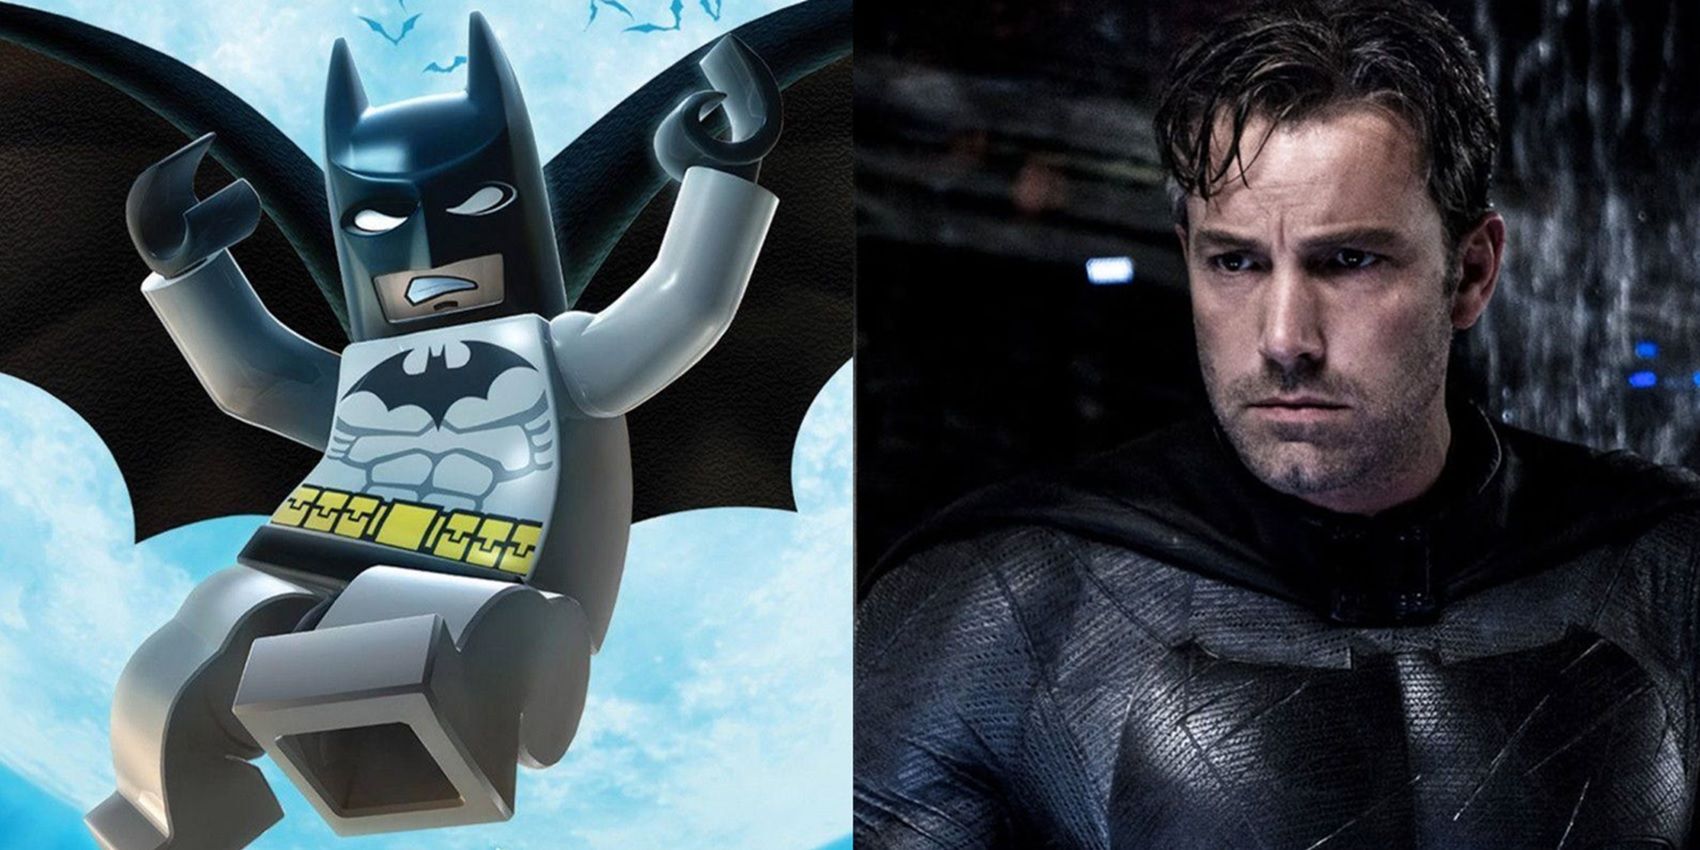 Lego Batman and Ben Affleck as Batman